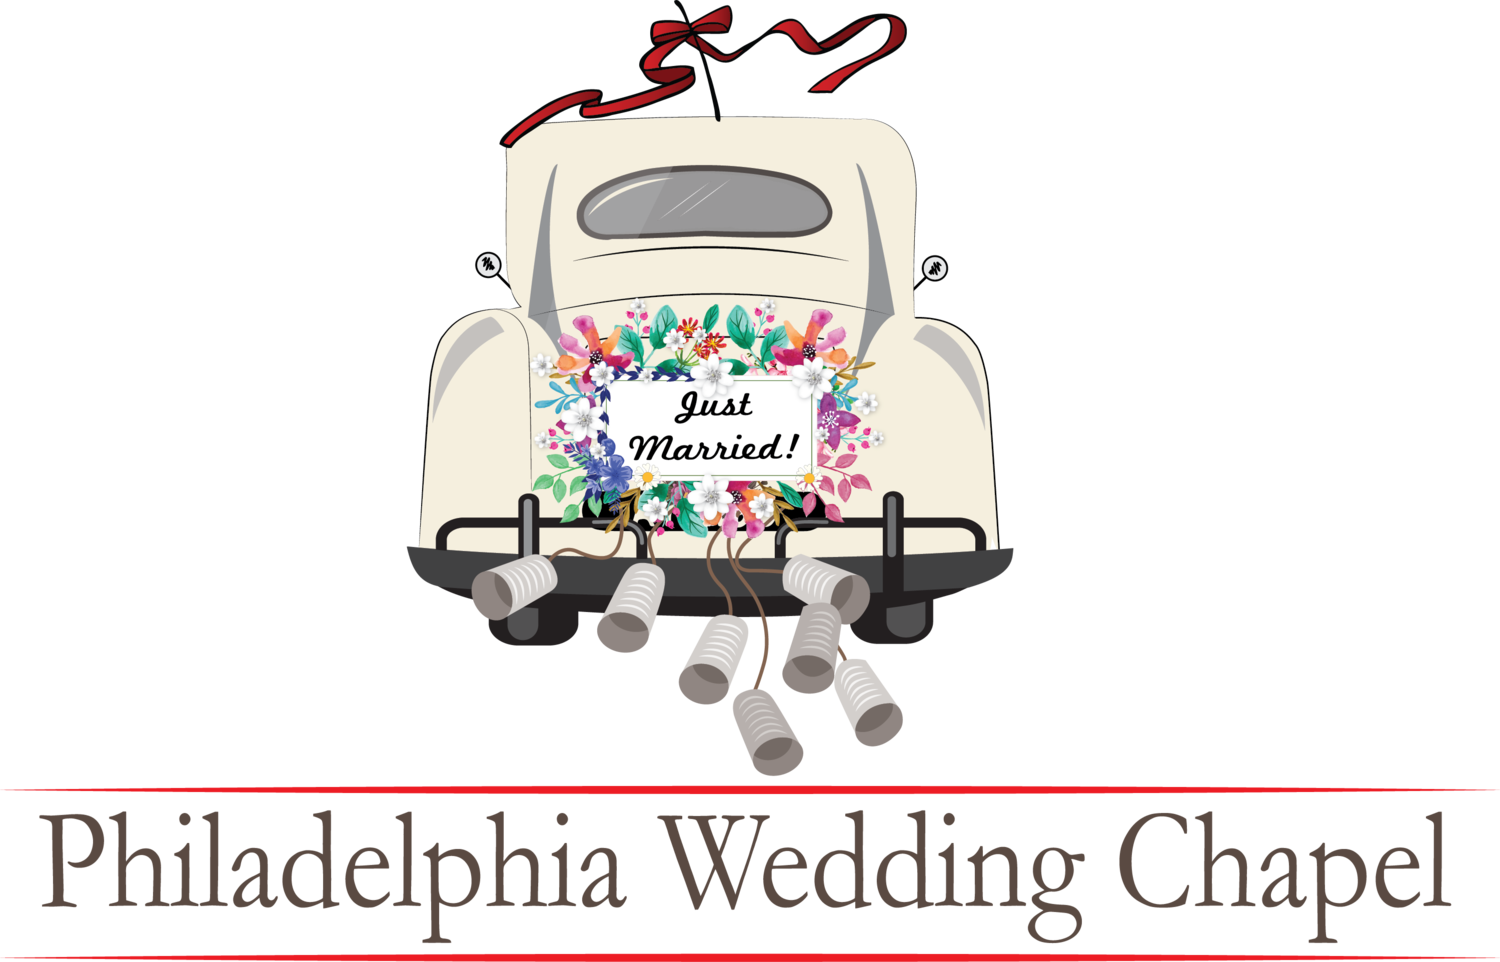 The Philadelphia Wedding Chapel